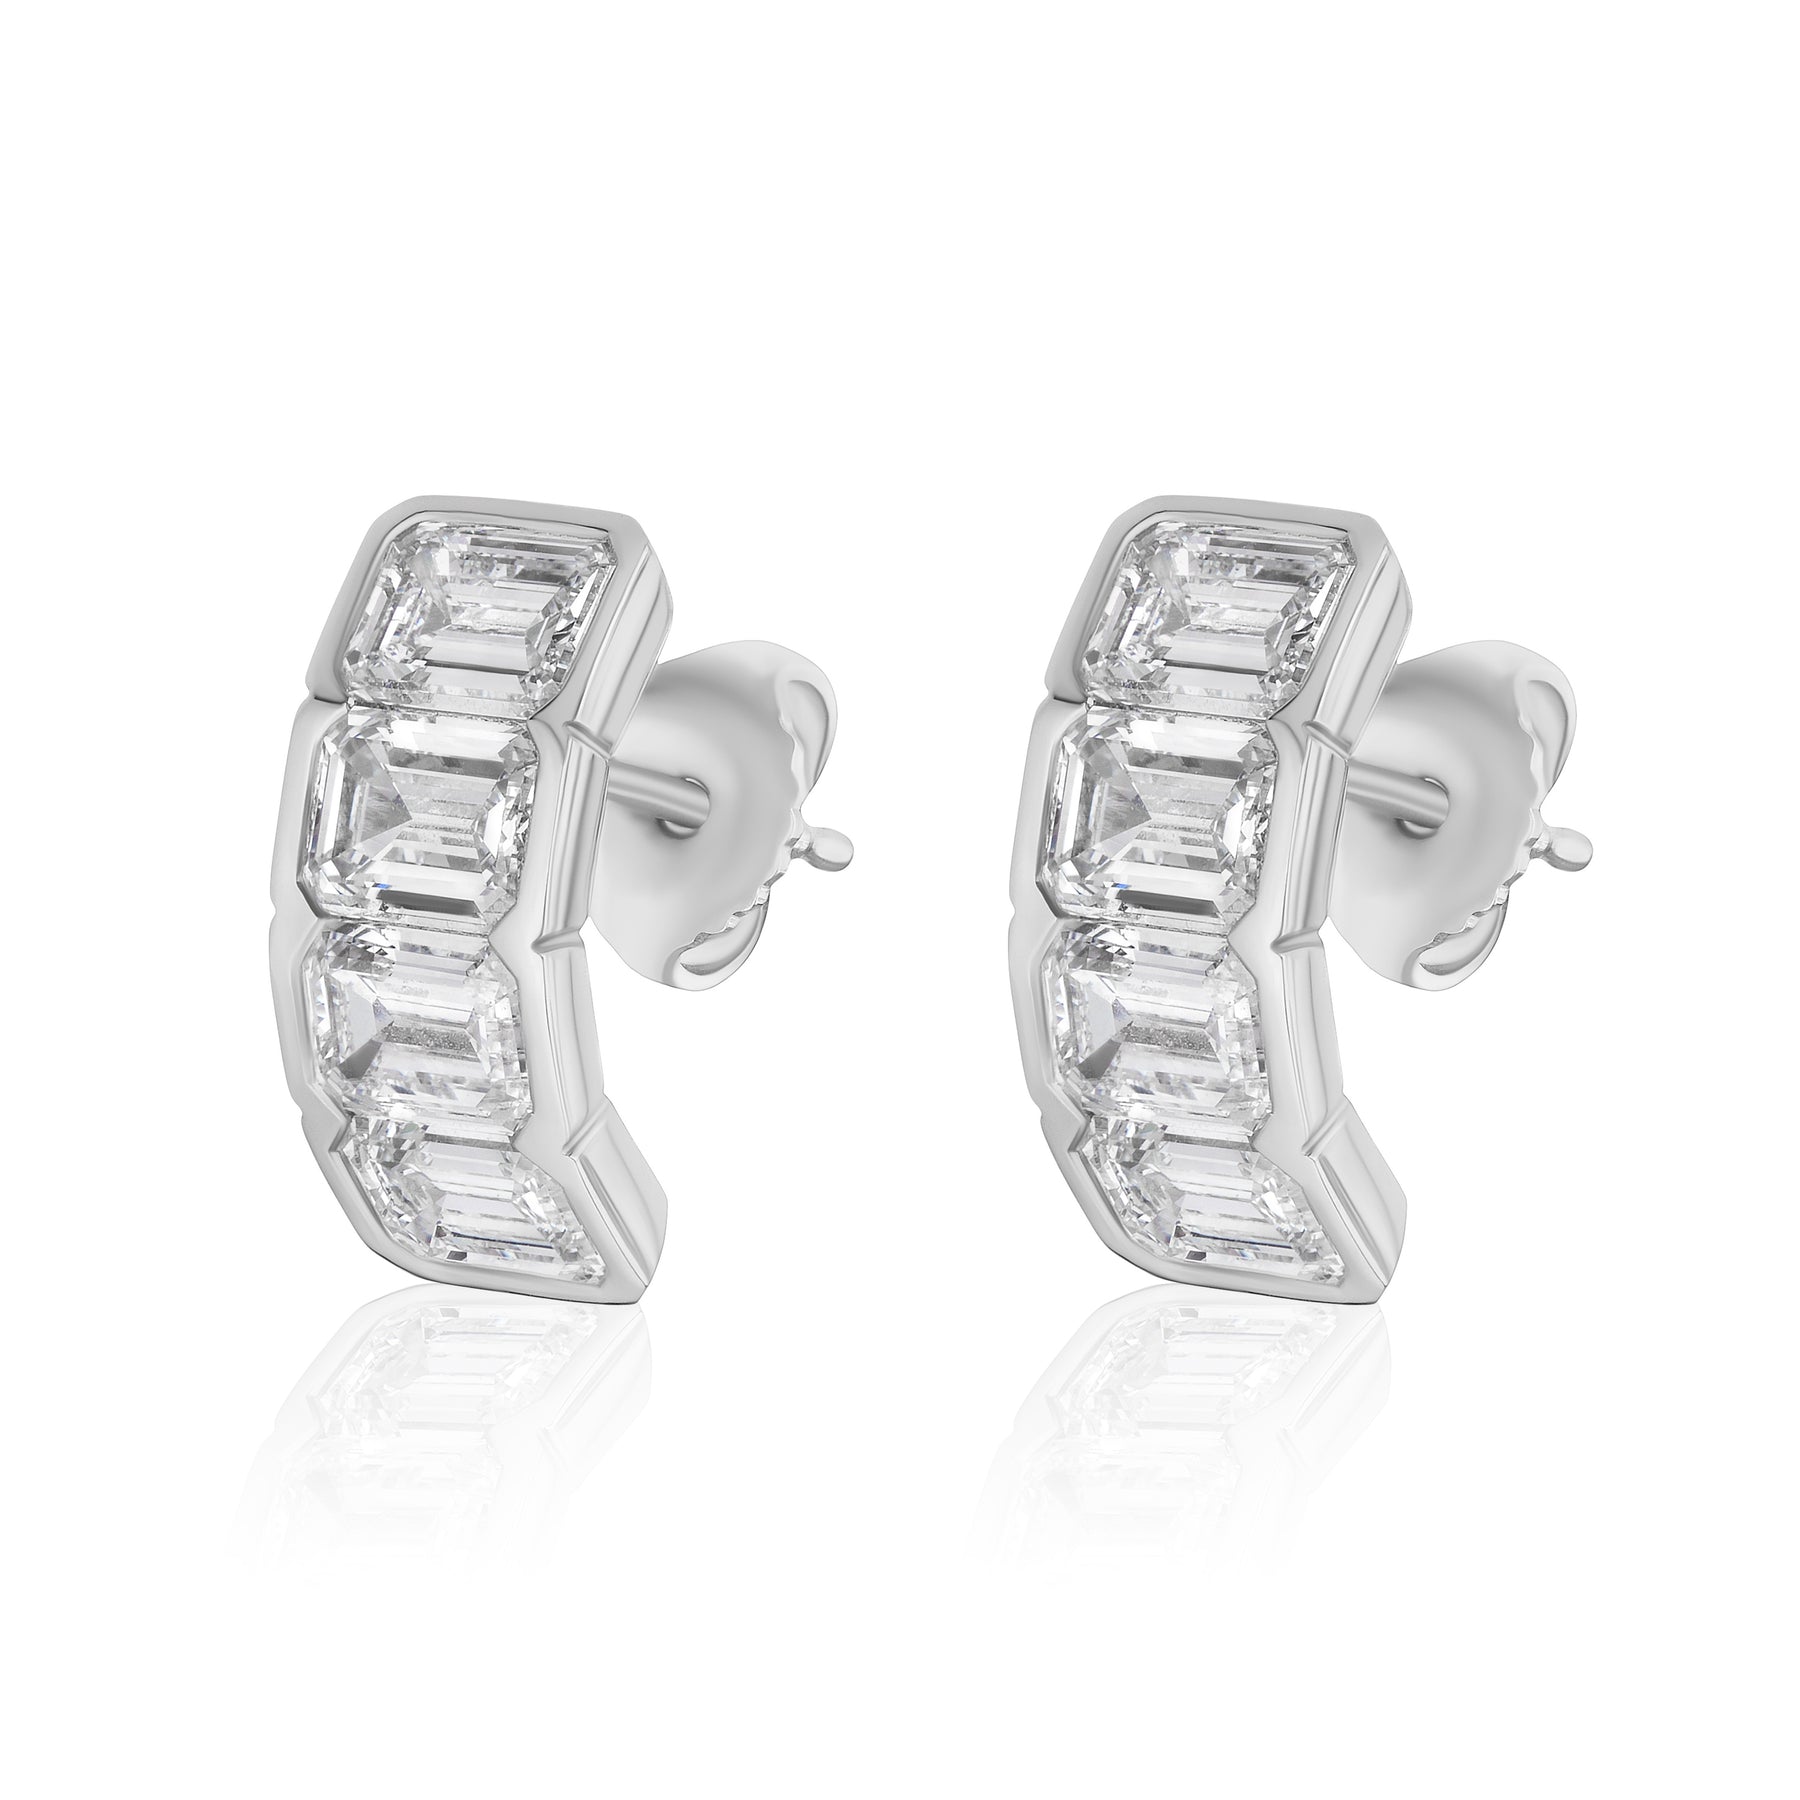 J Hoop Earring in White Gold with Bezel Set Emerald Cut Diamonds